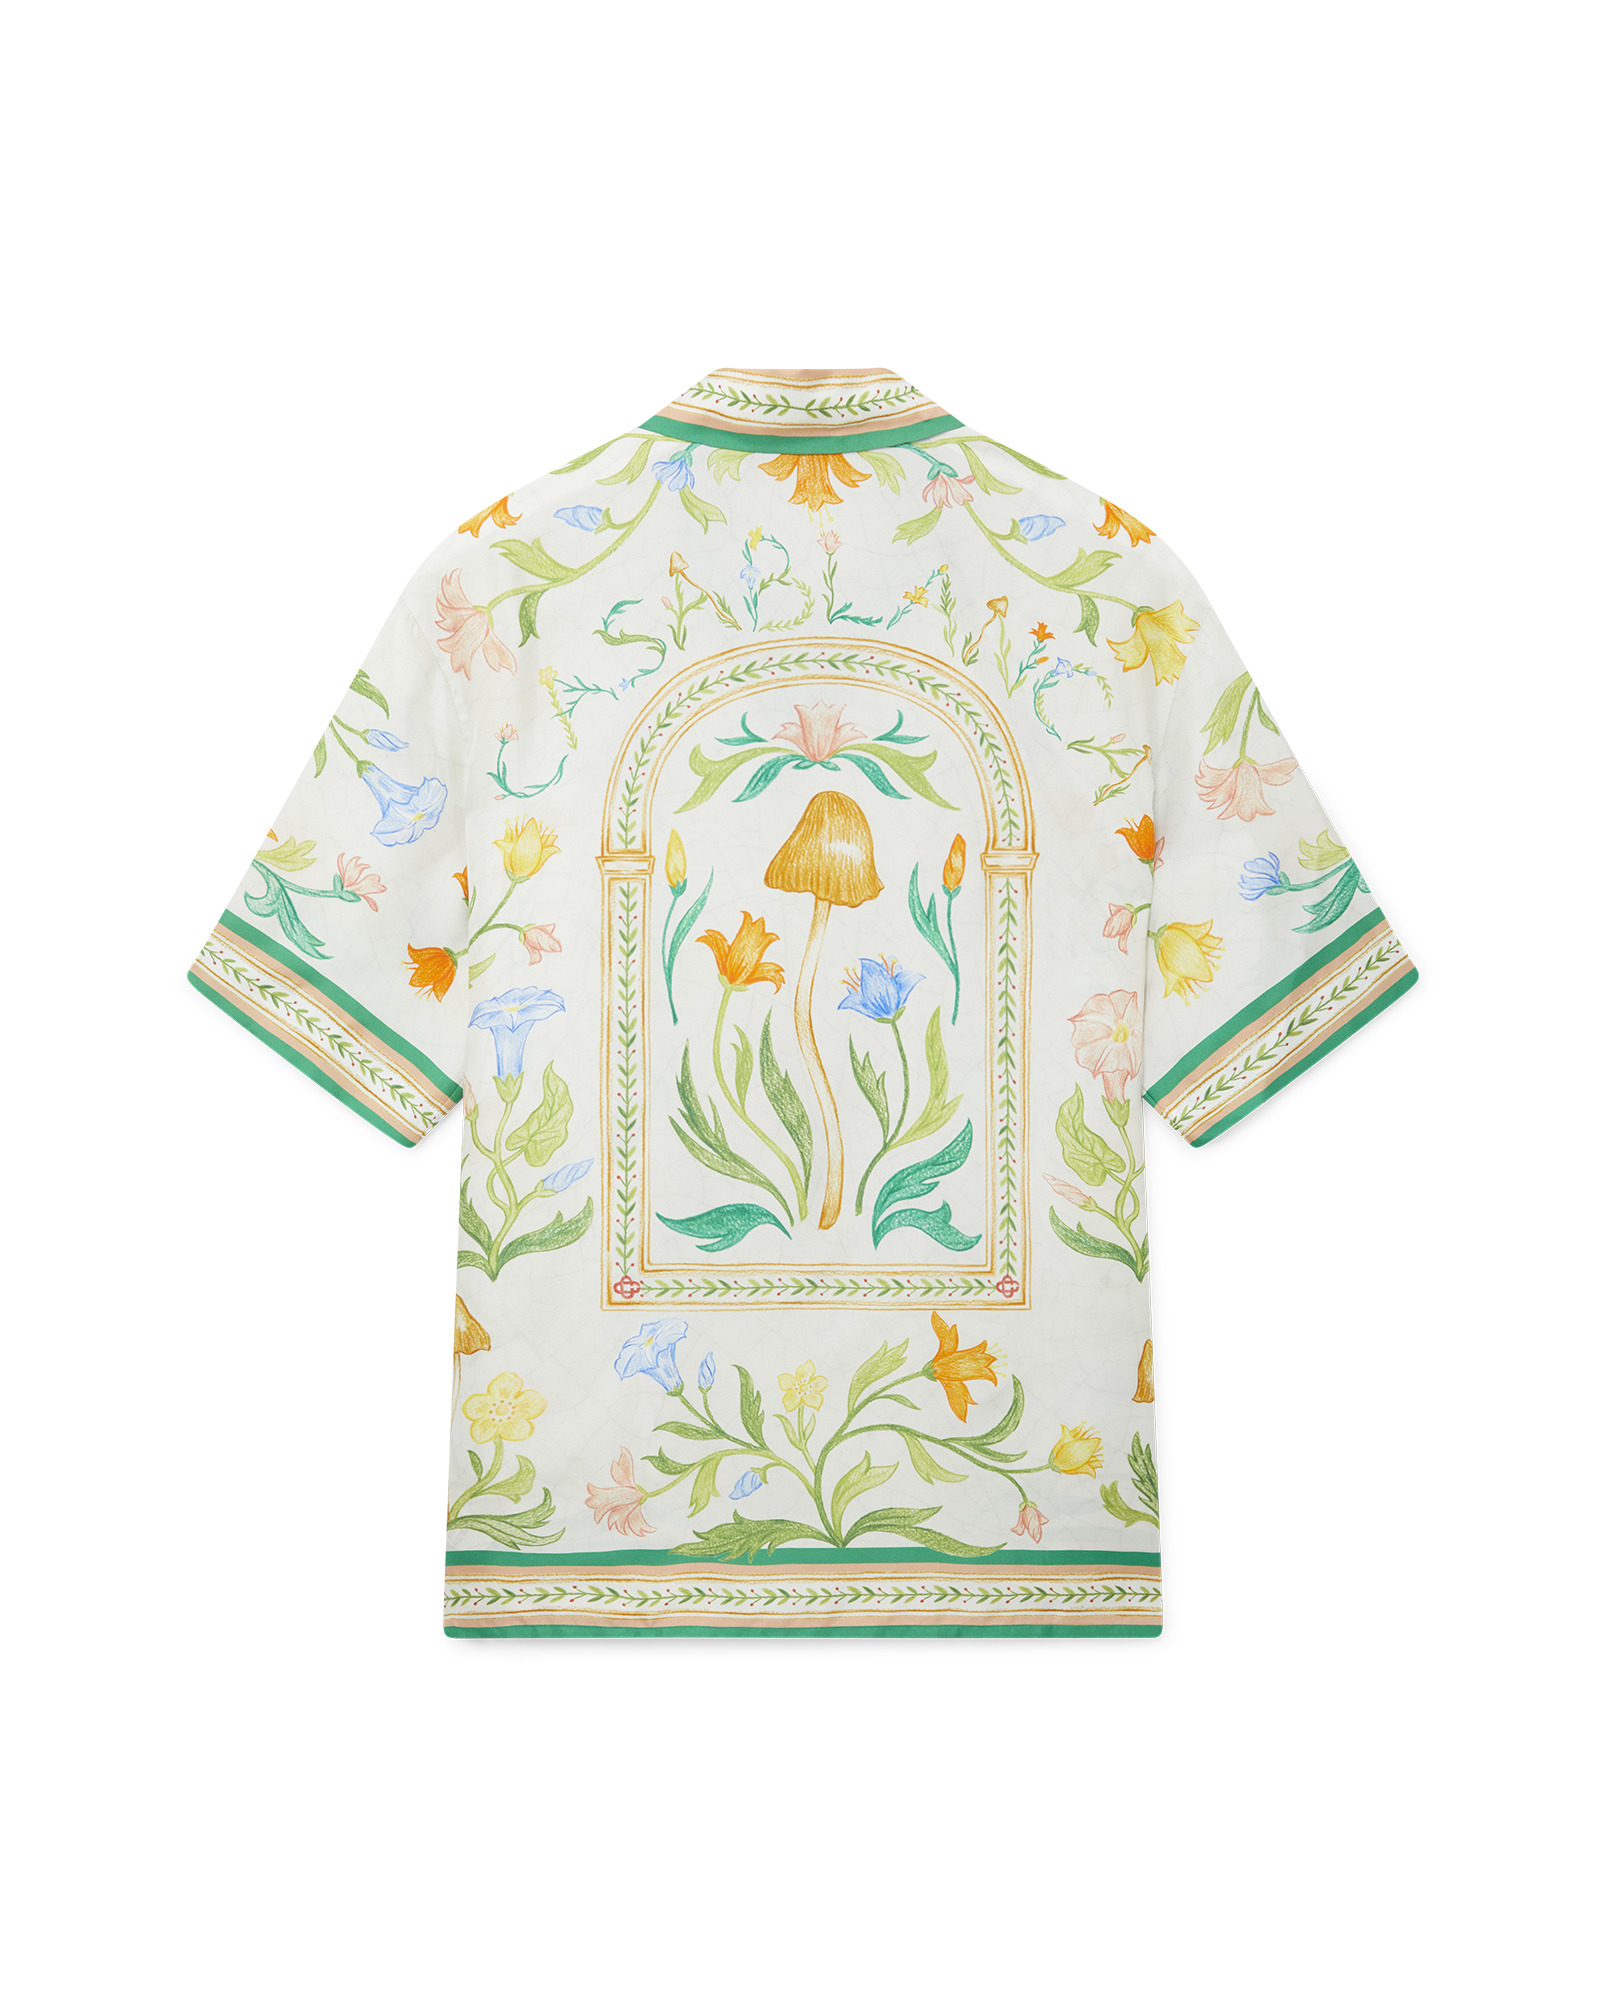 L'Arche Fleurie Silk Shirt - 1